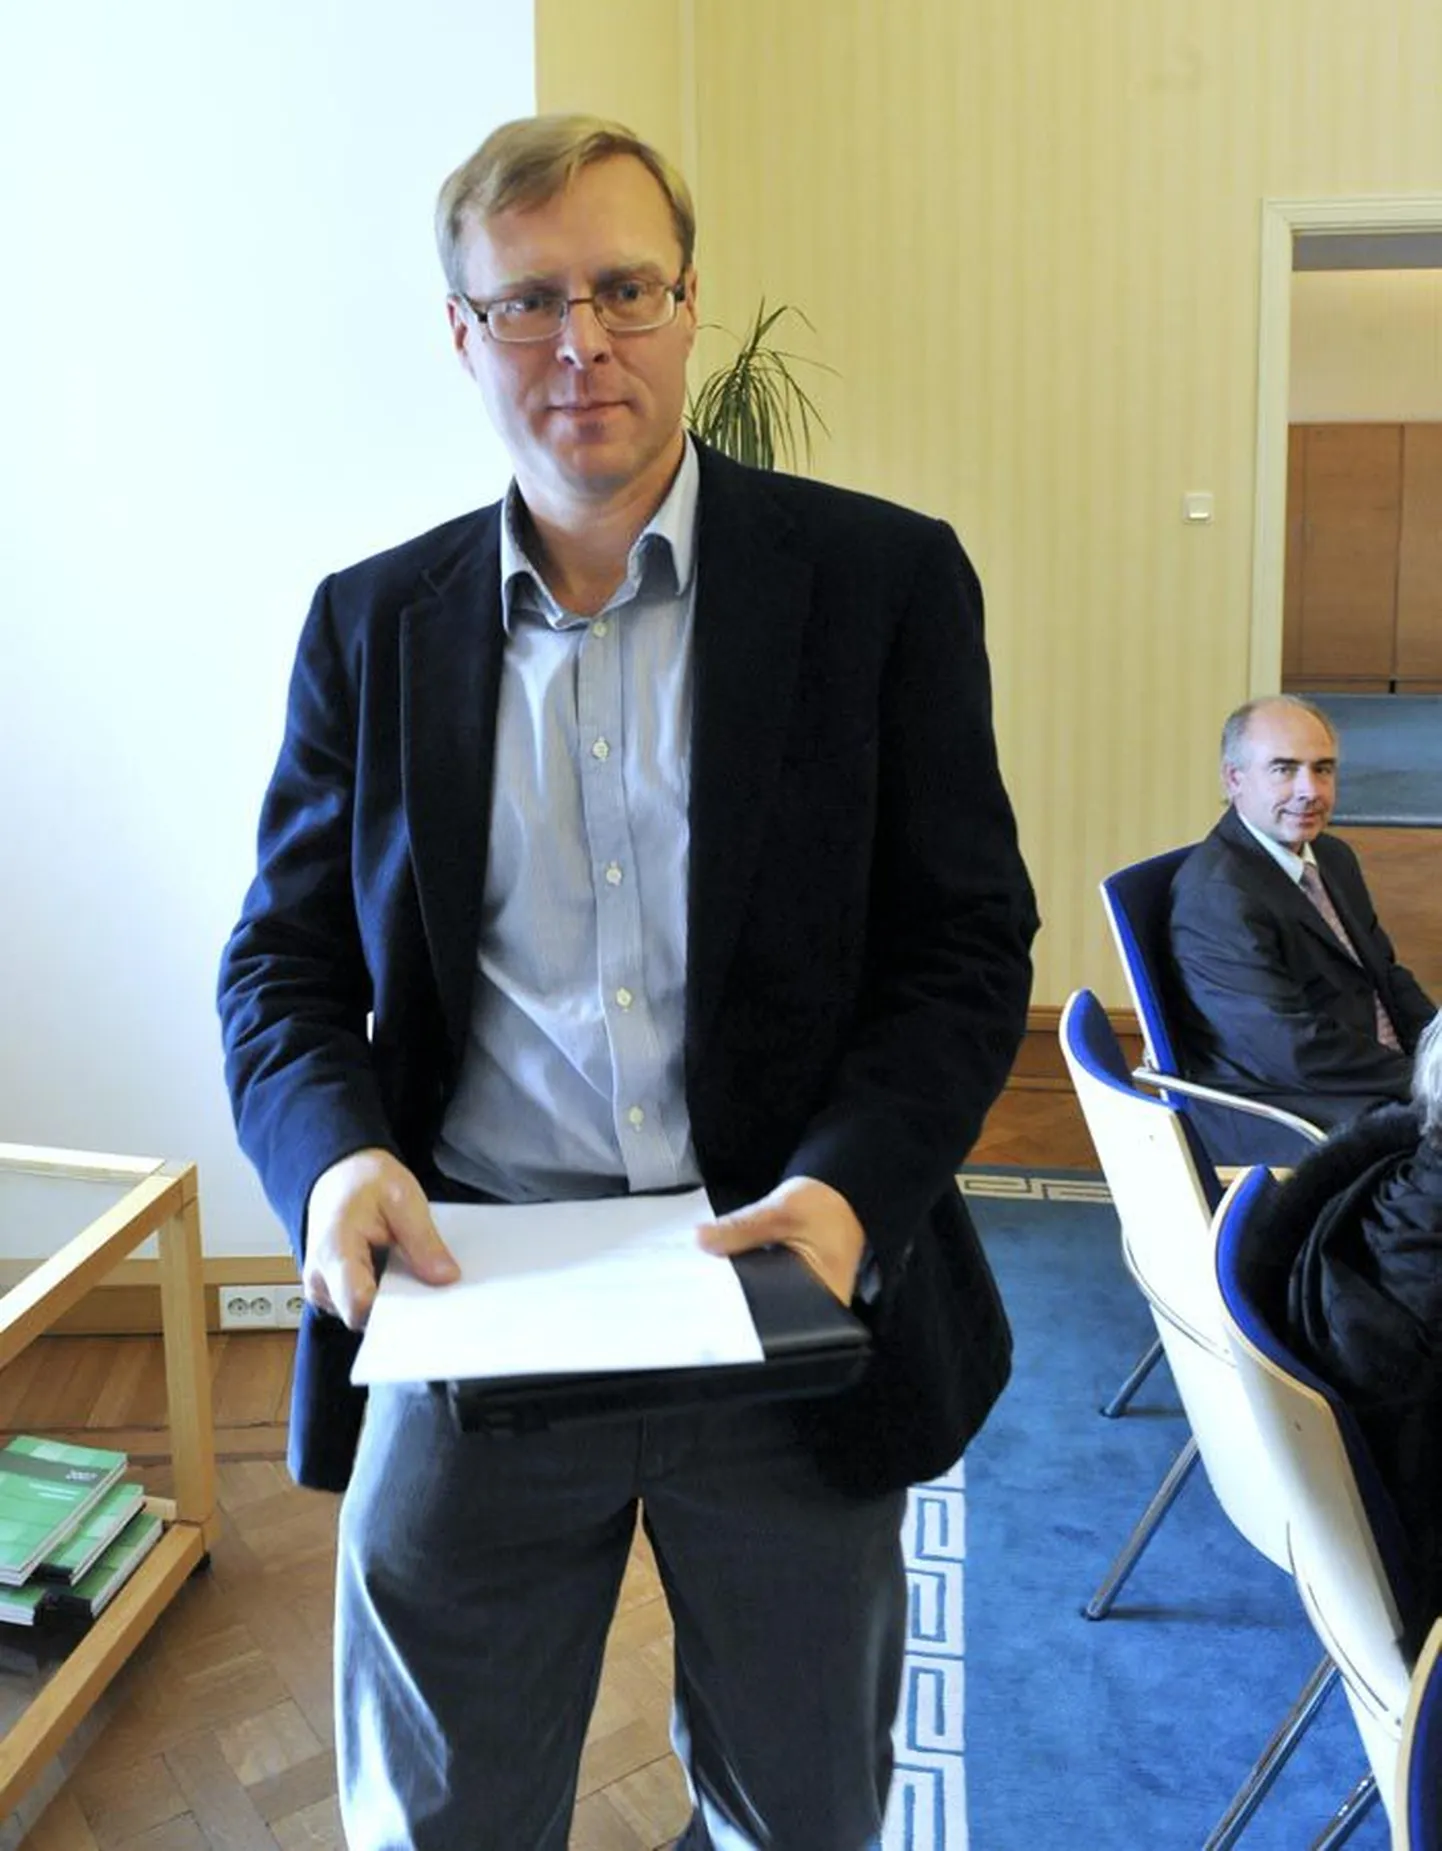 Komisjonile uue juhi leidmiseks kuulutati esimene konkurss välja eelmisel aastal. Osales kolm kandidaati, kuid sobivat ei leitud. Hannes Rumm valiti välja teisel konkursil.